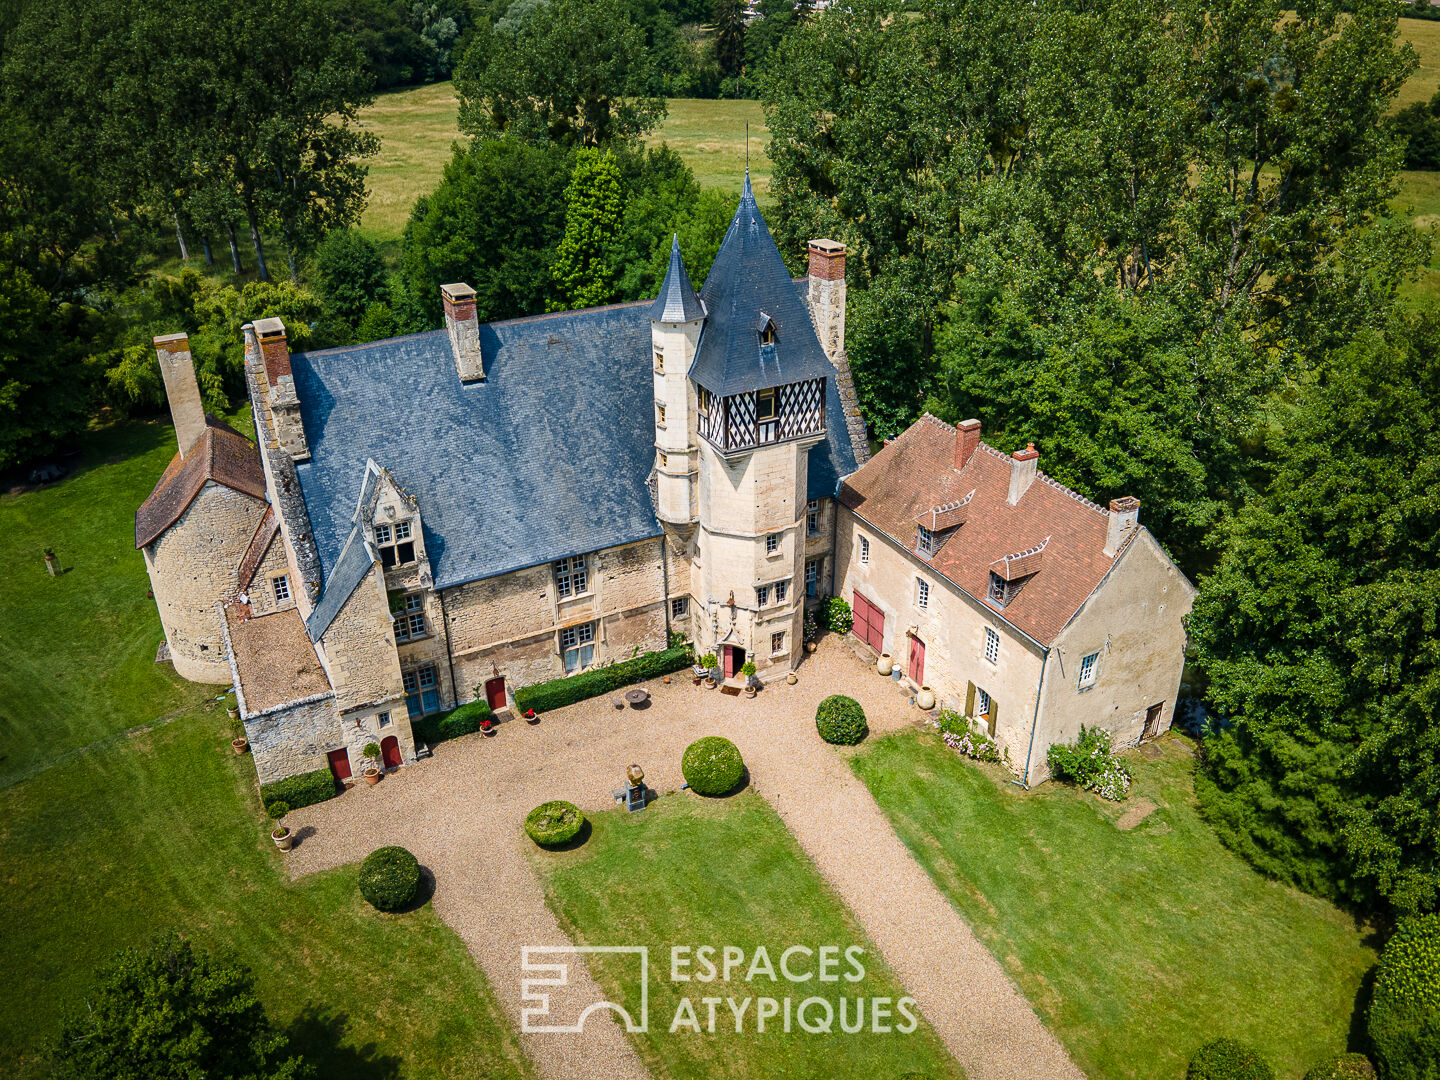 Medieval castle with renaissance charm